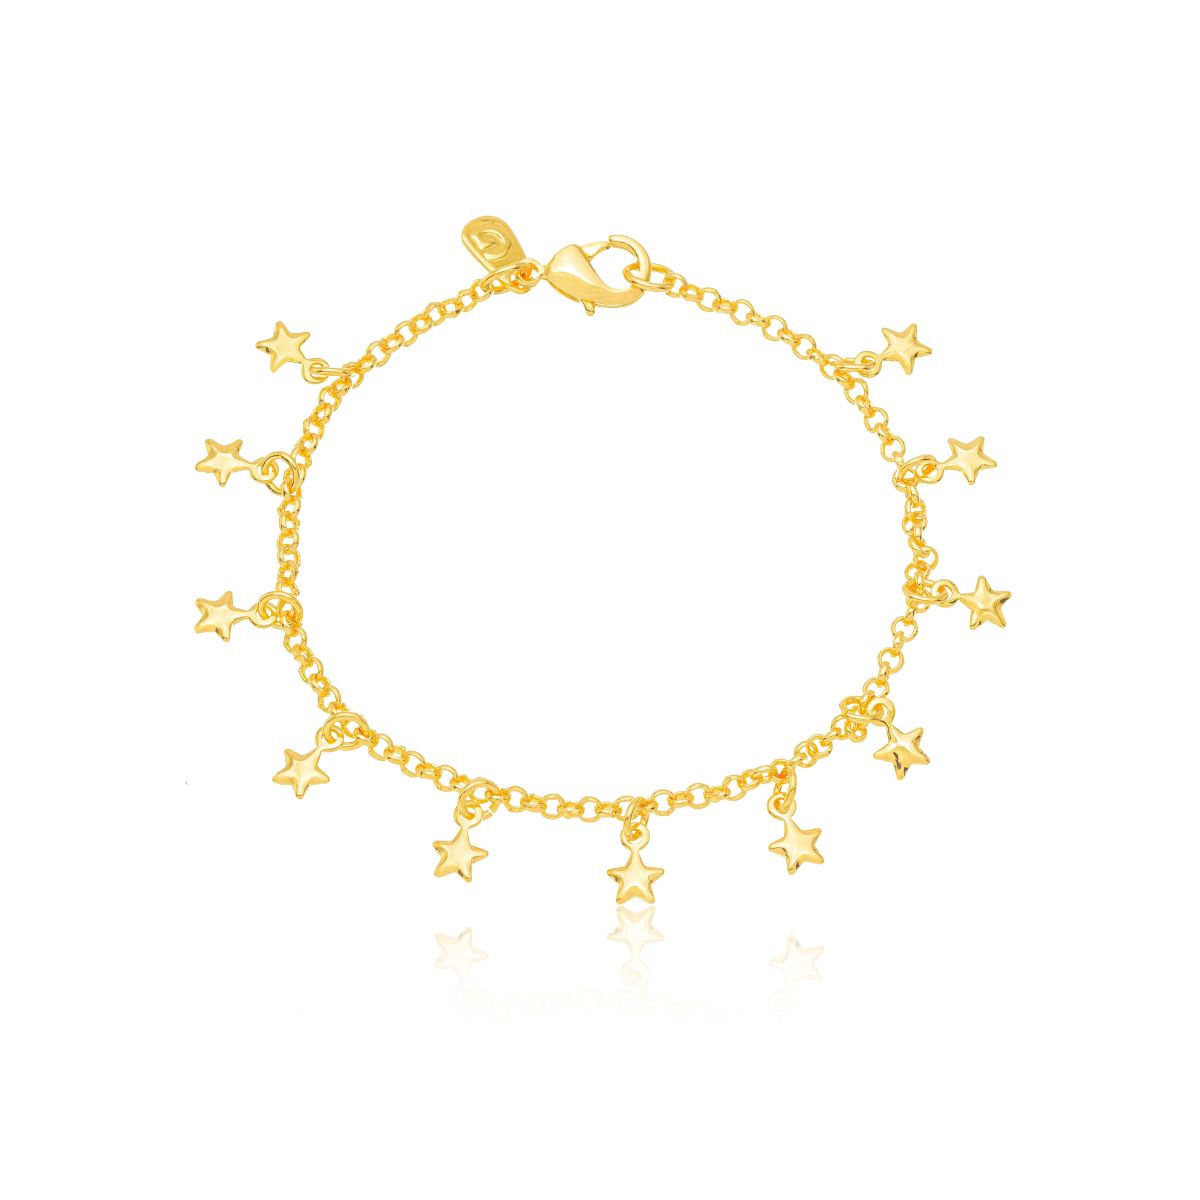 Little Stars bracelet